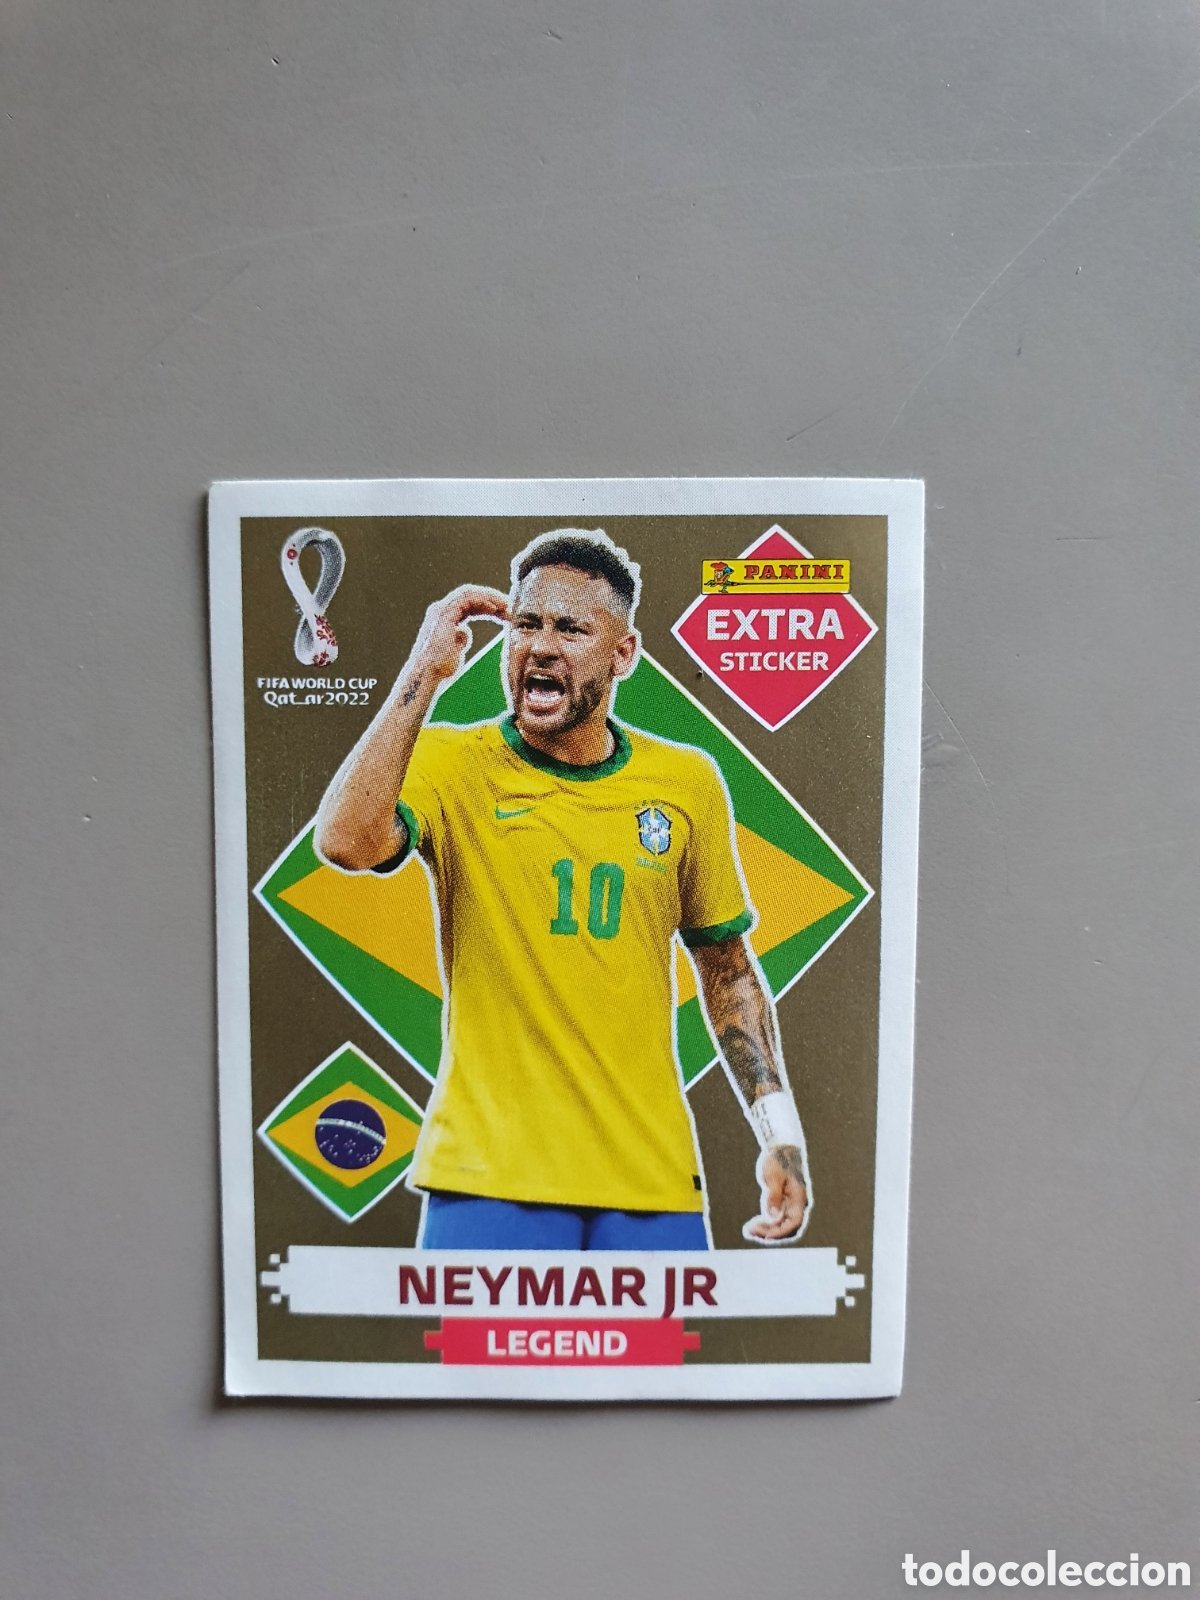 PANINI Extra Sticker Qatar 2022 #D14 NEYMAR JR. Brazil LEGEND - GOLD